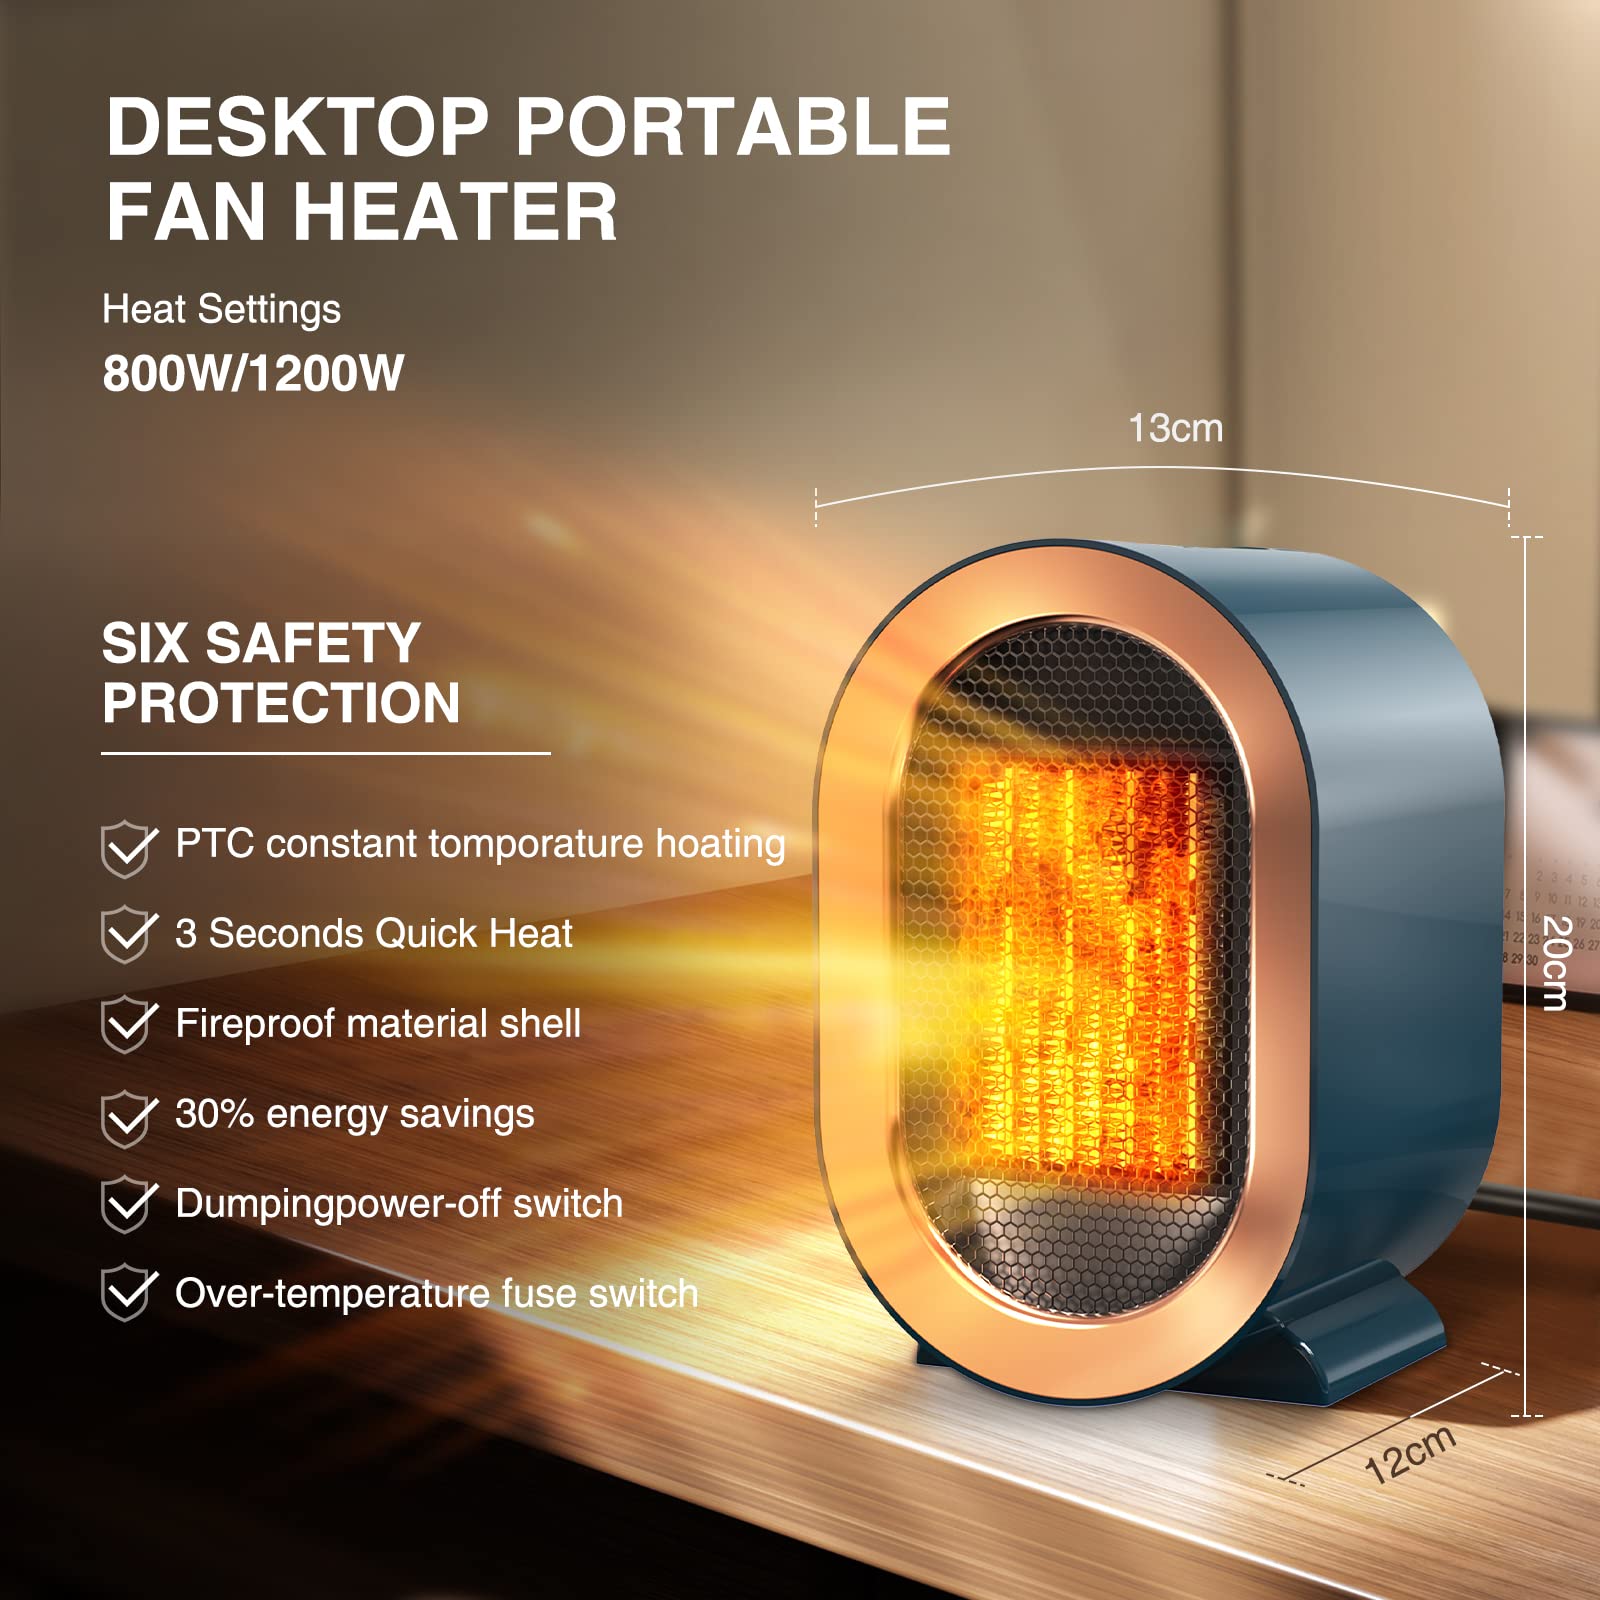 Bærbar varmevifte PTC rask oppvarming trygg og stillegående – for kontorbord baderom varmeapparat for små rom